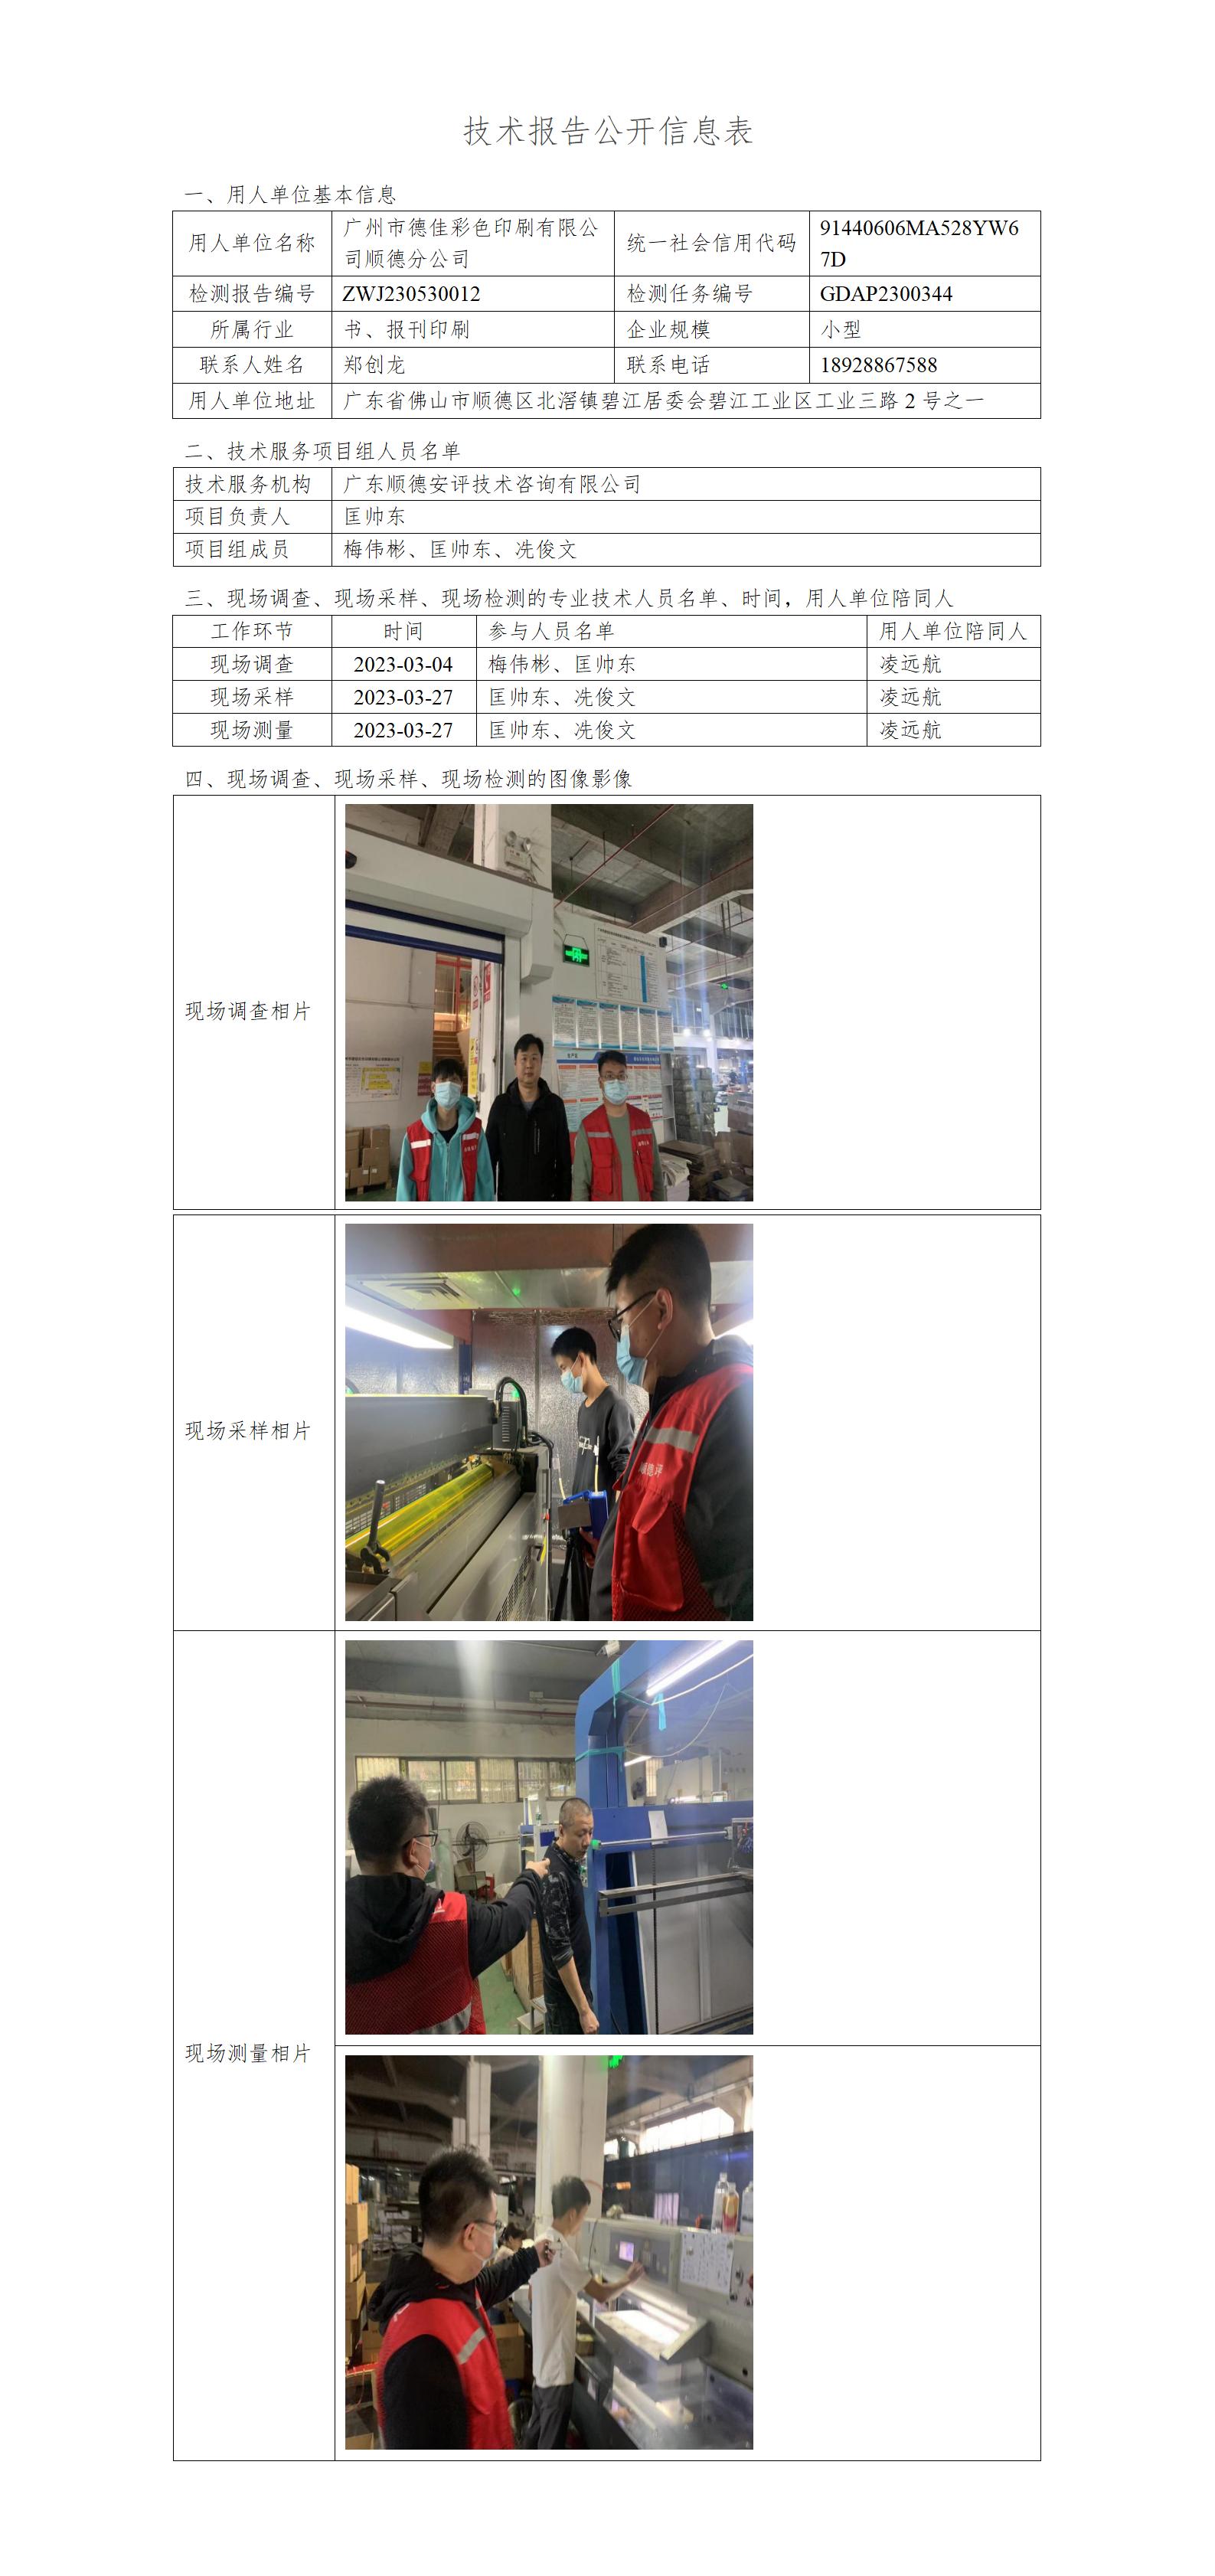 广州市德佳彩色印刷有限公司顺德分公司-2023-技术报告公开信息表_01.jpg